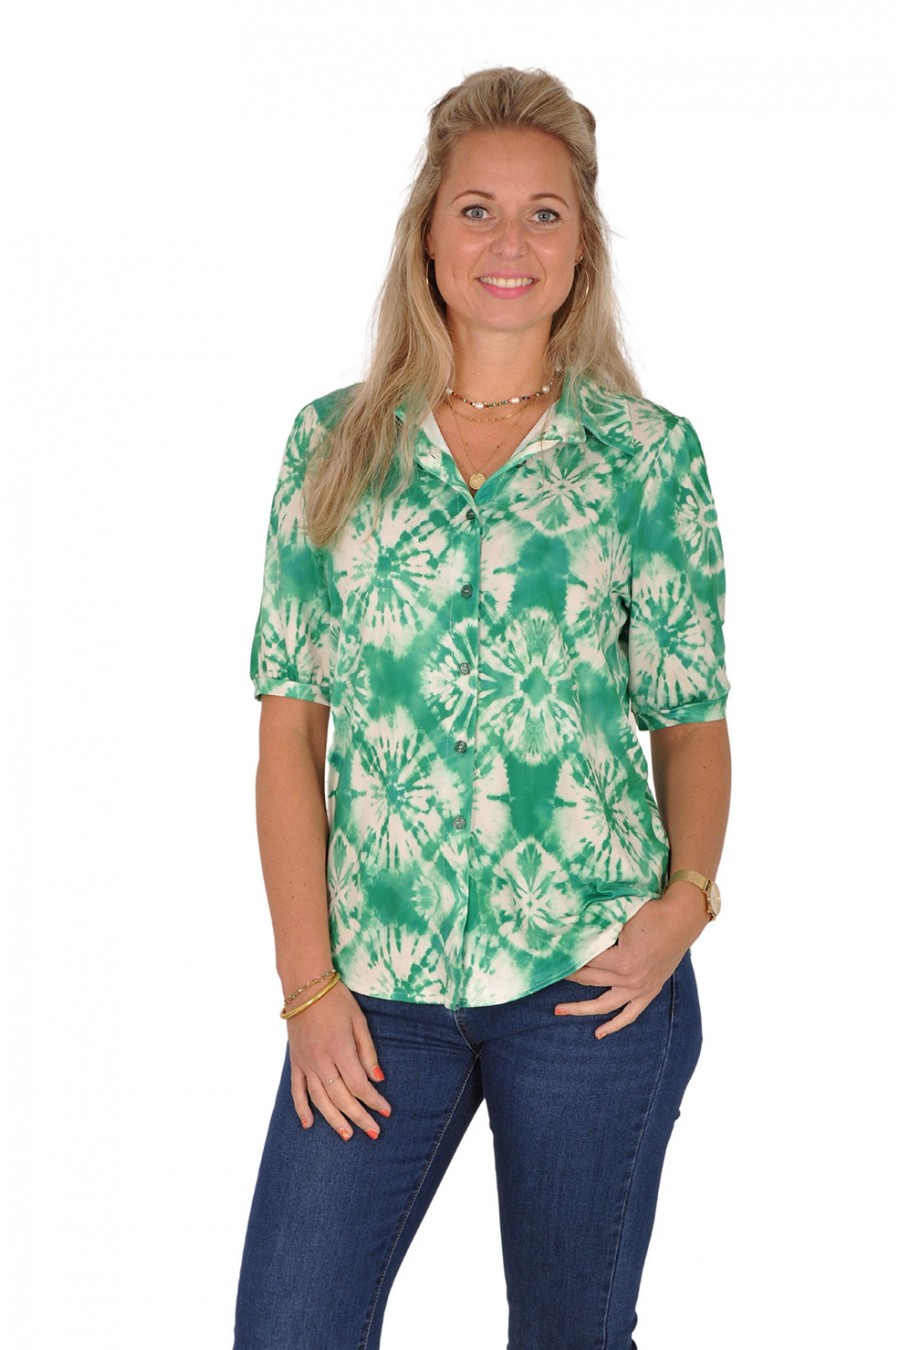 Ultrasoft blouse Tie dye groen New Collection